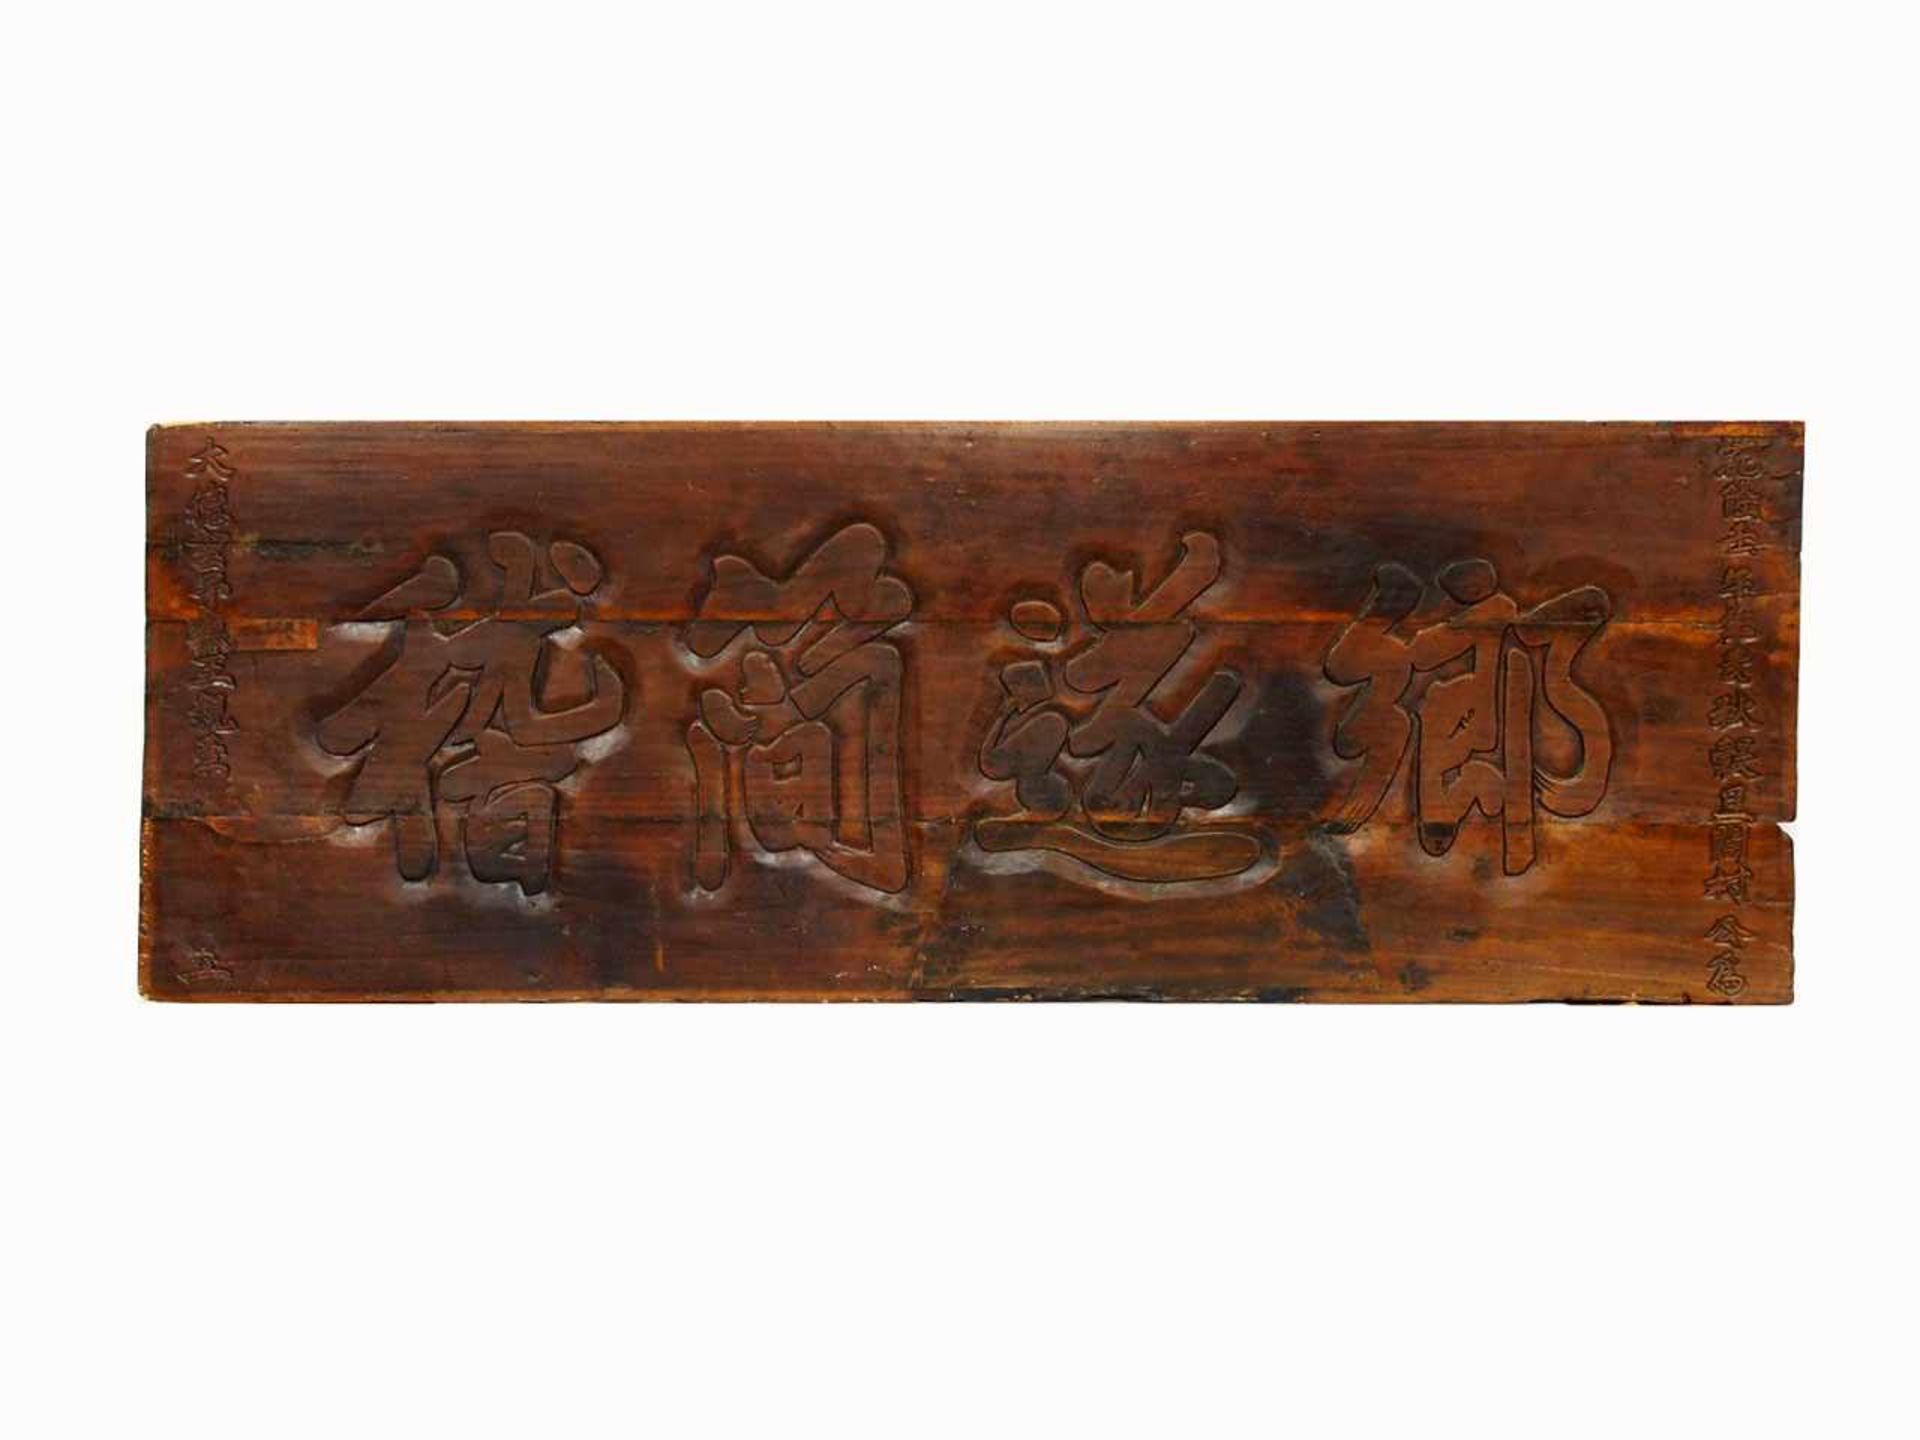 Ladenschild (?)Inschriftenbrett, China, 17./18. Jh., Holz, geschnitzt, 65,5 x 185 cm